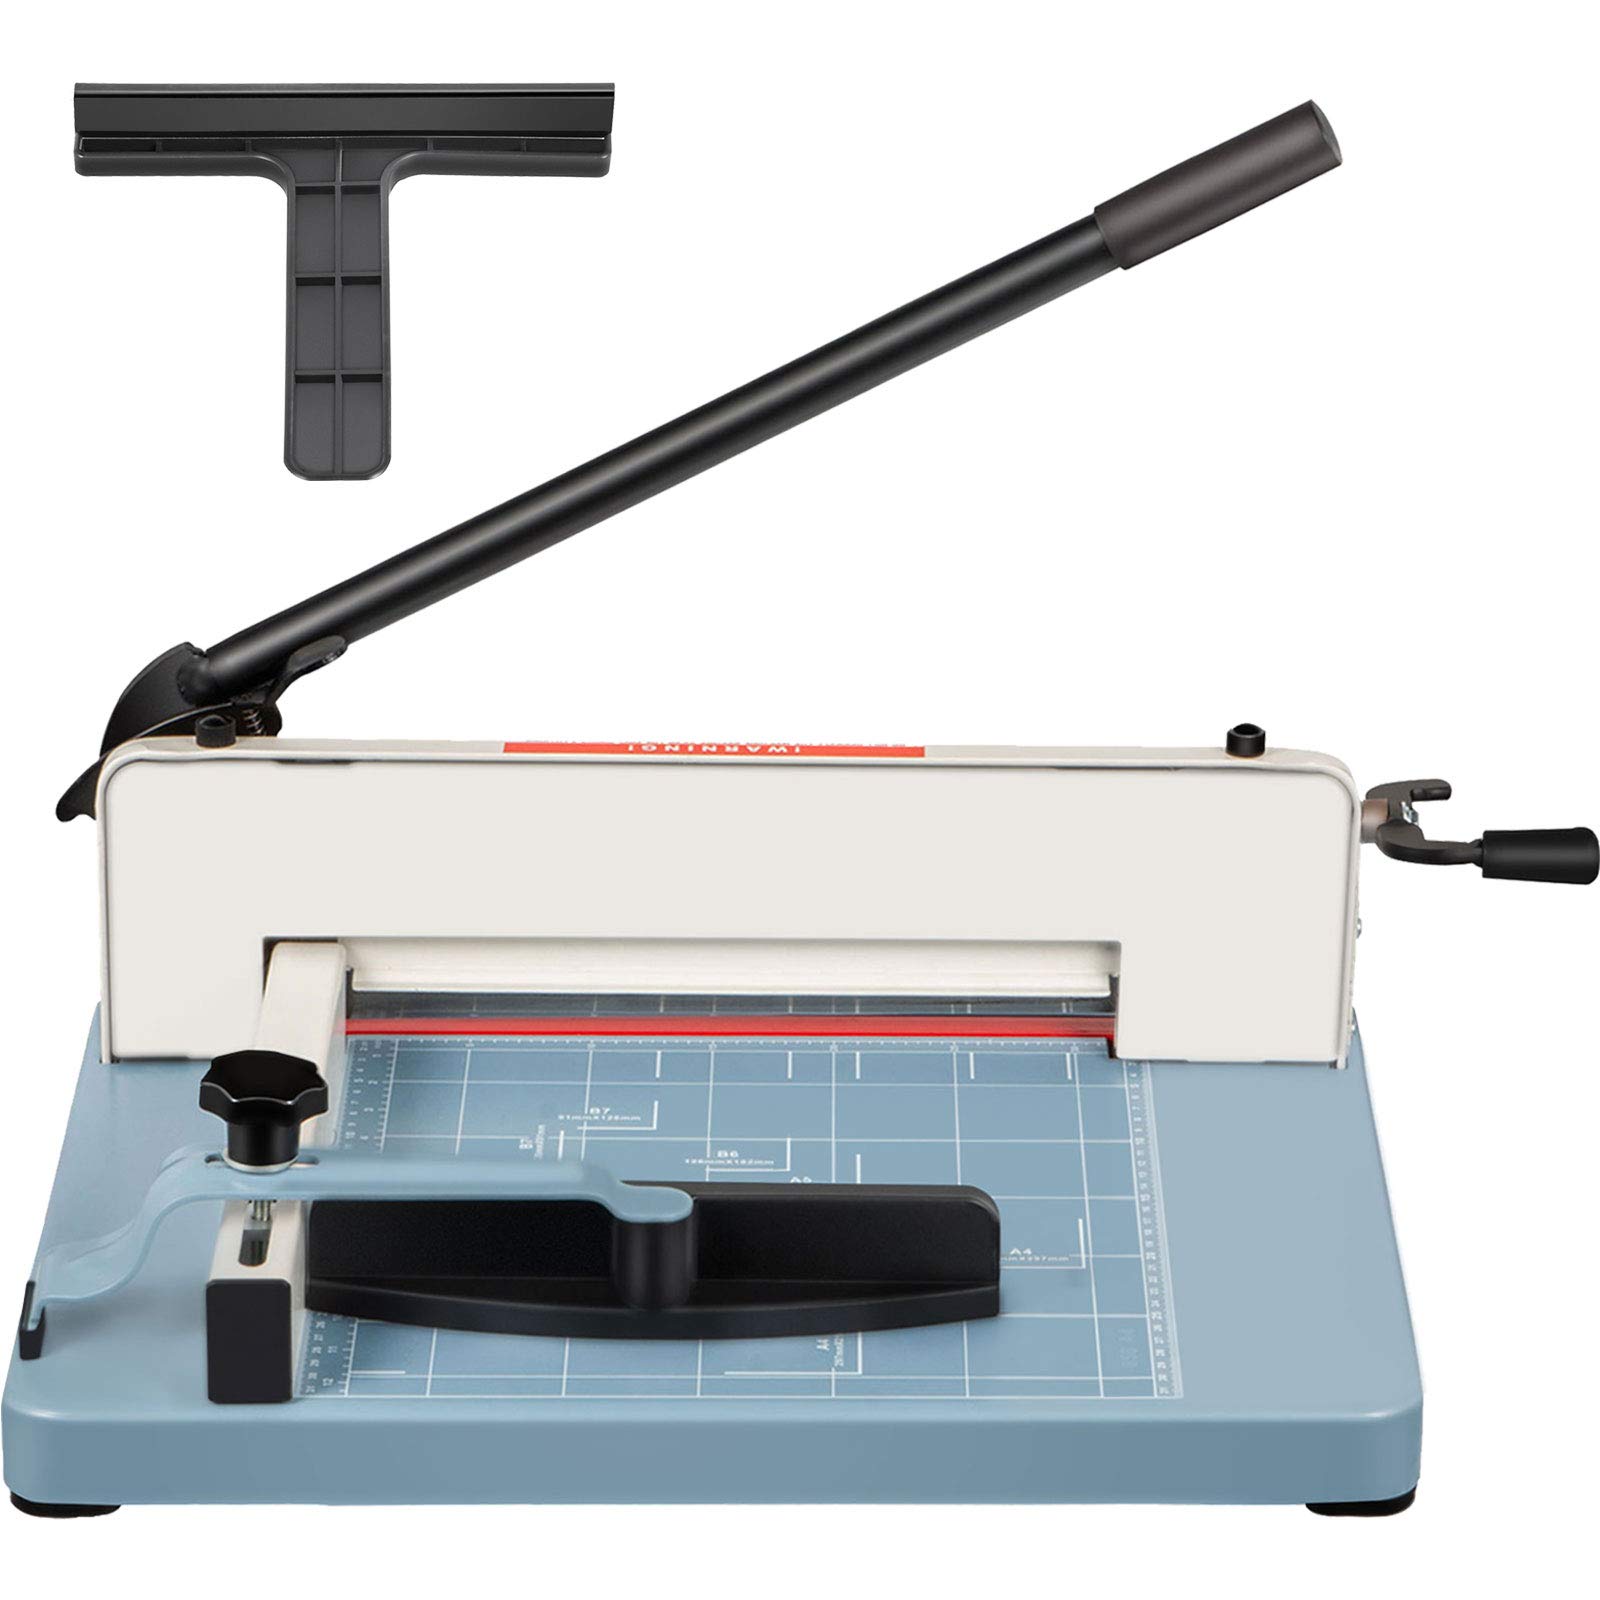 VEVOR 工业切纸机重型 500 张纸张，带清晰切割指南，适用于办公室、学校、企业和印刷店